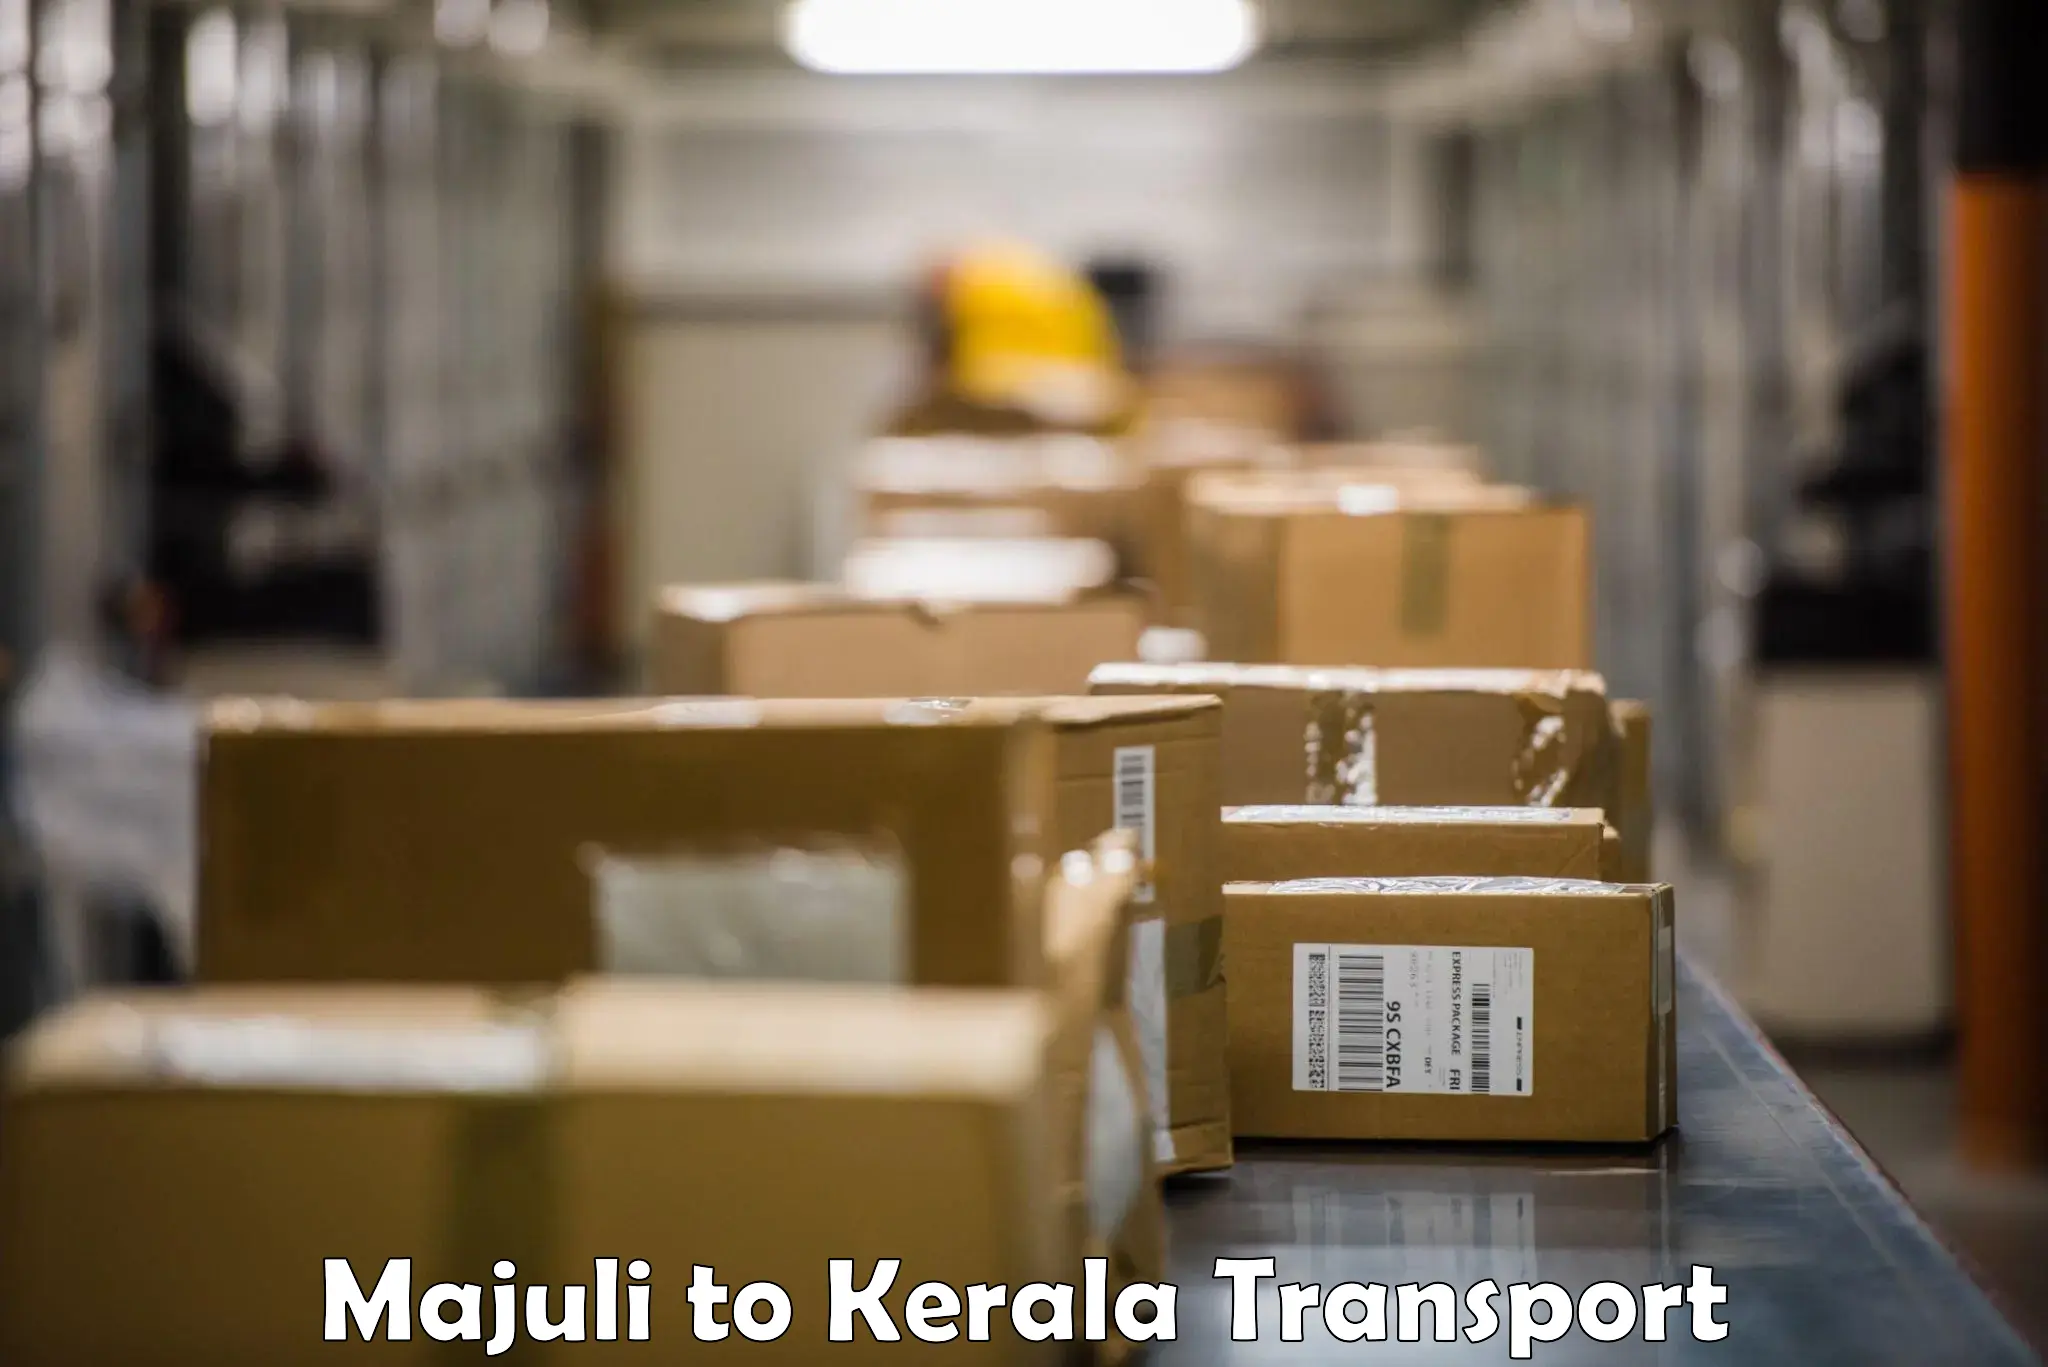 Nearest transport service Majuli to Ponekkara